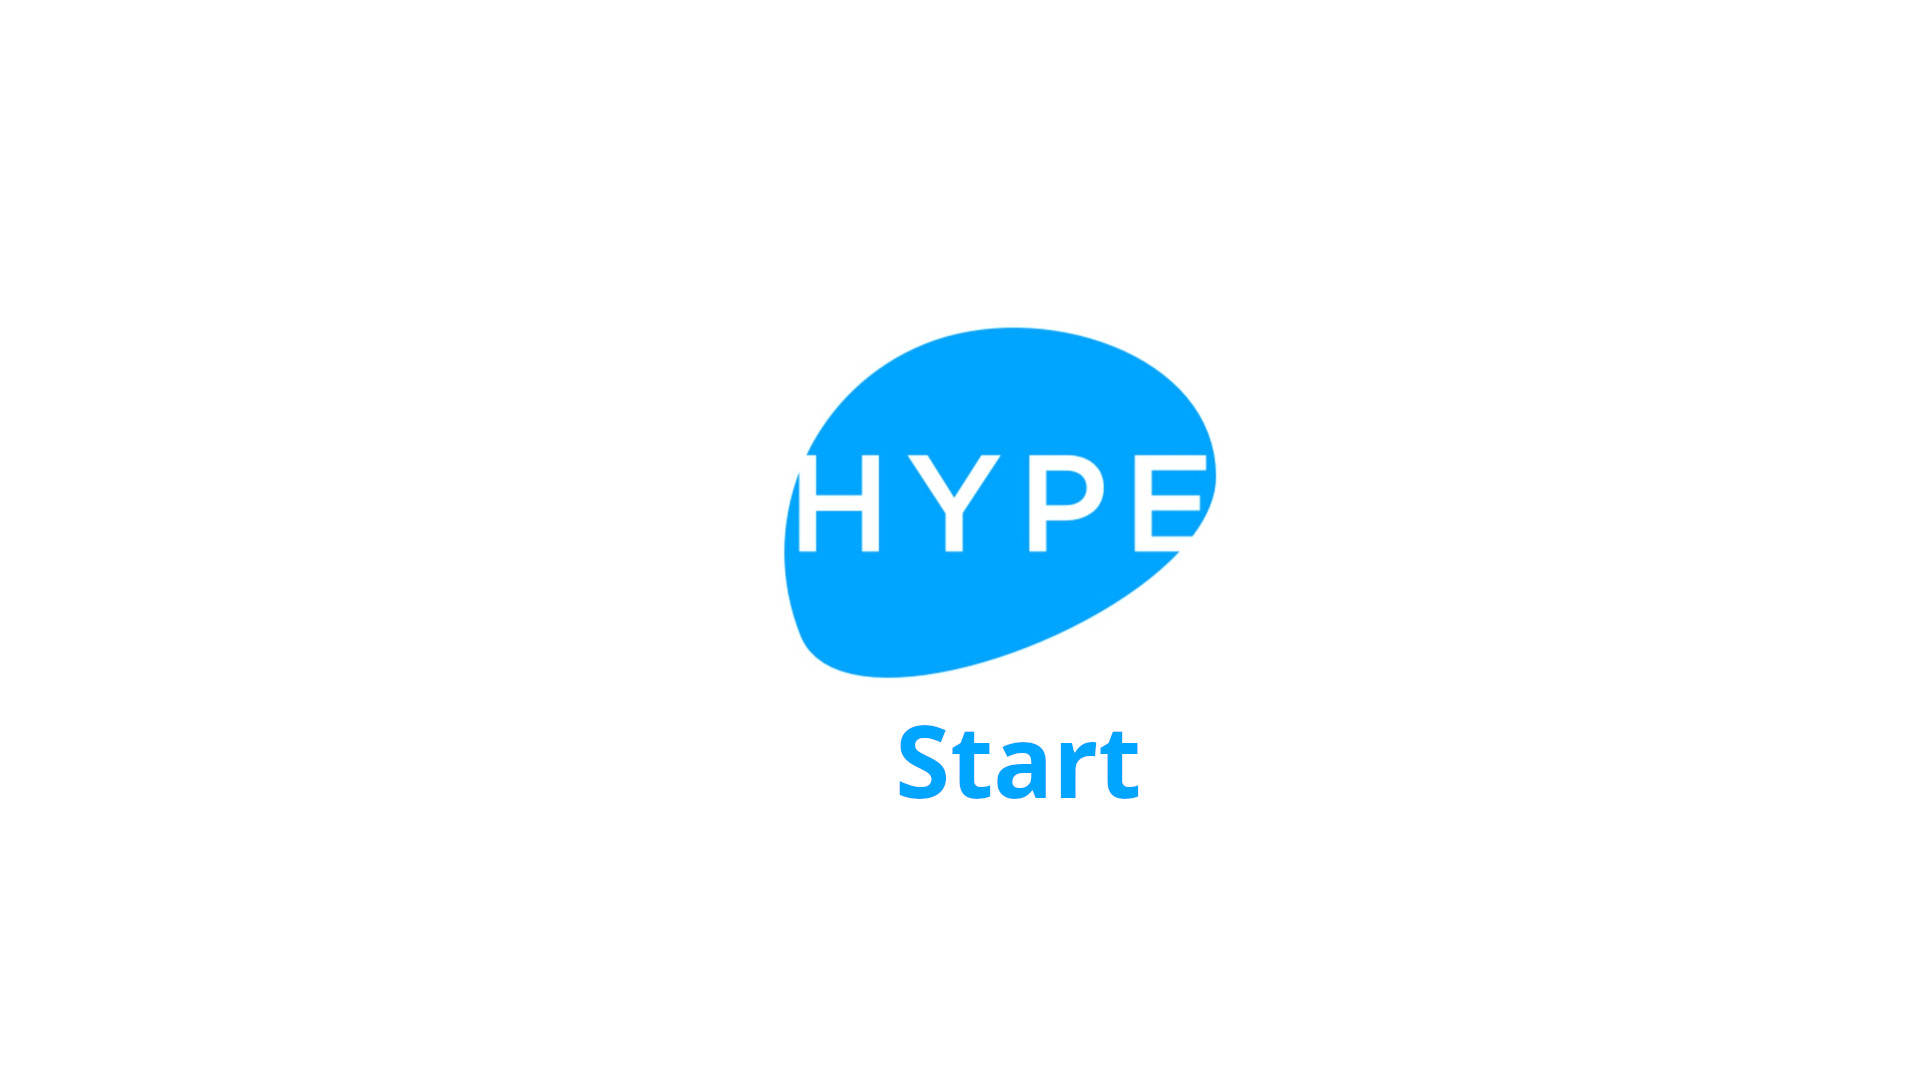 Hype Start